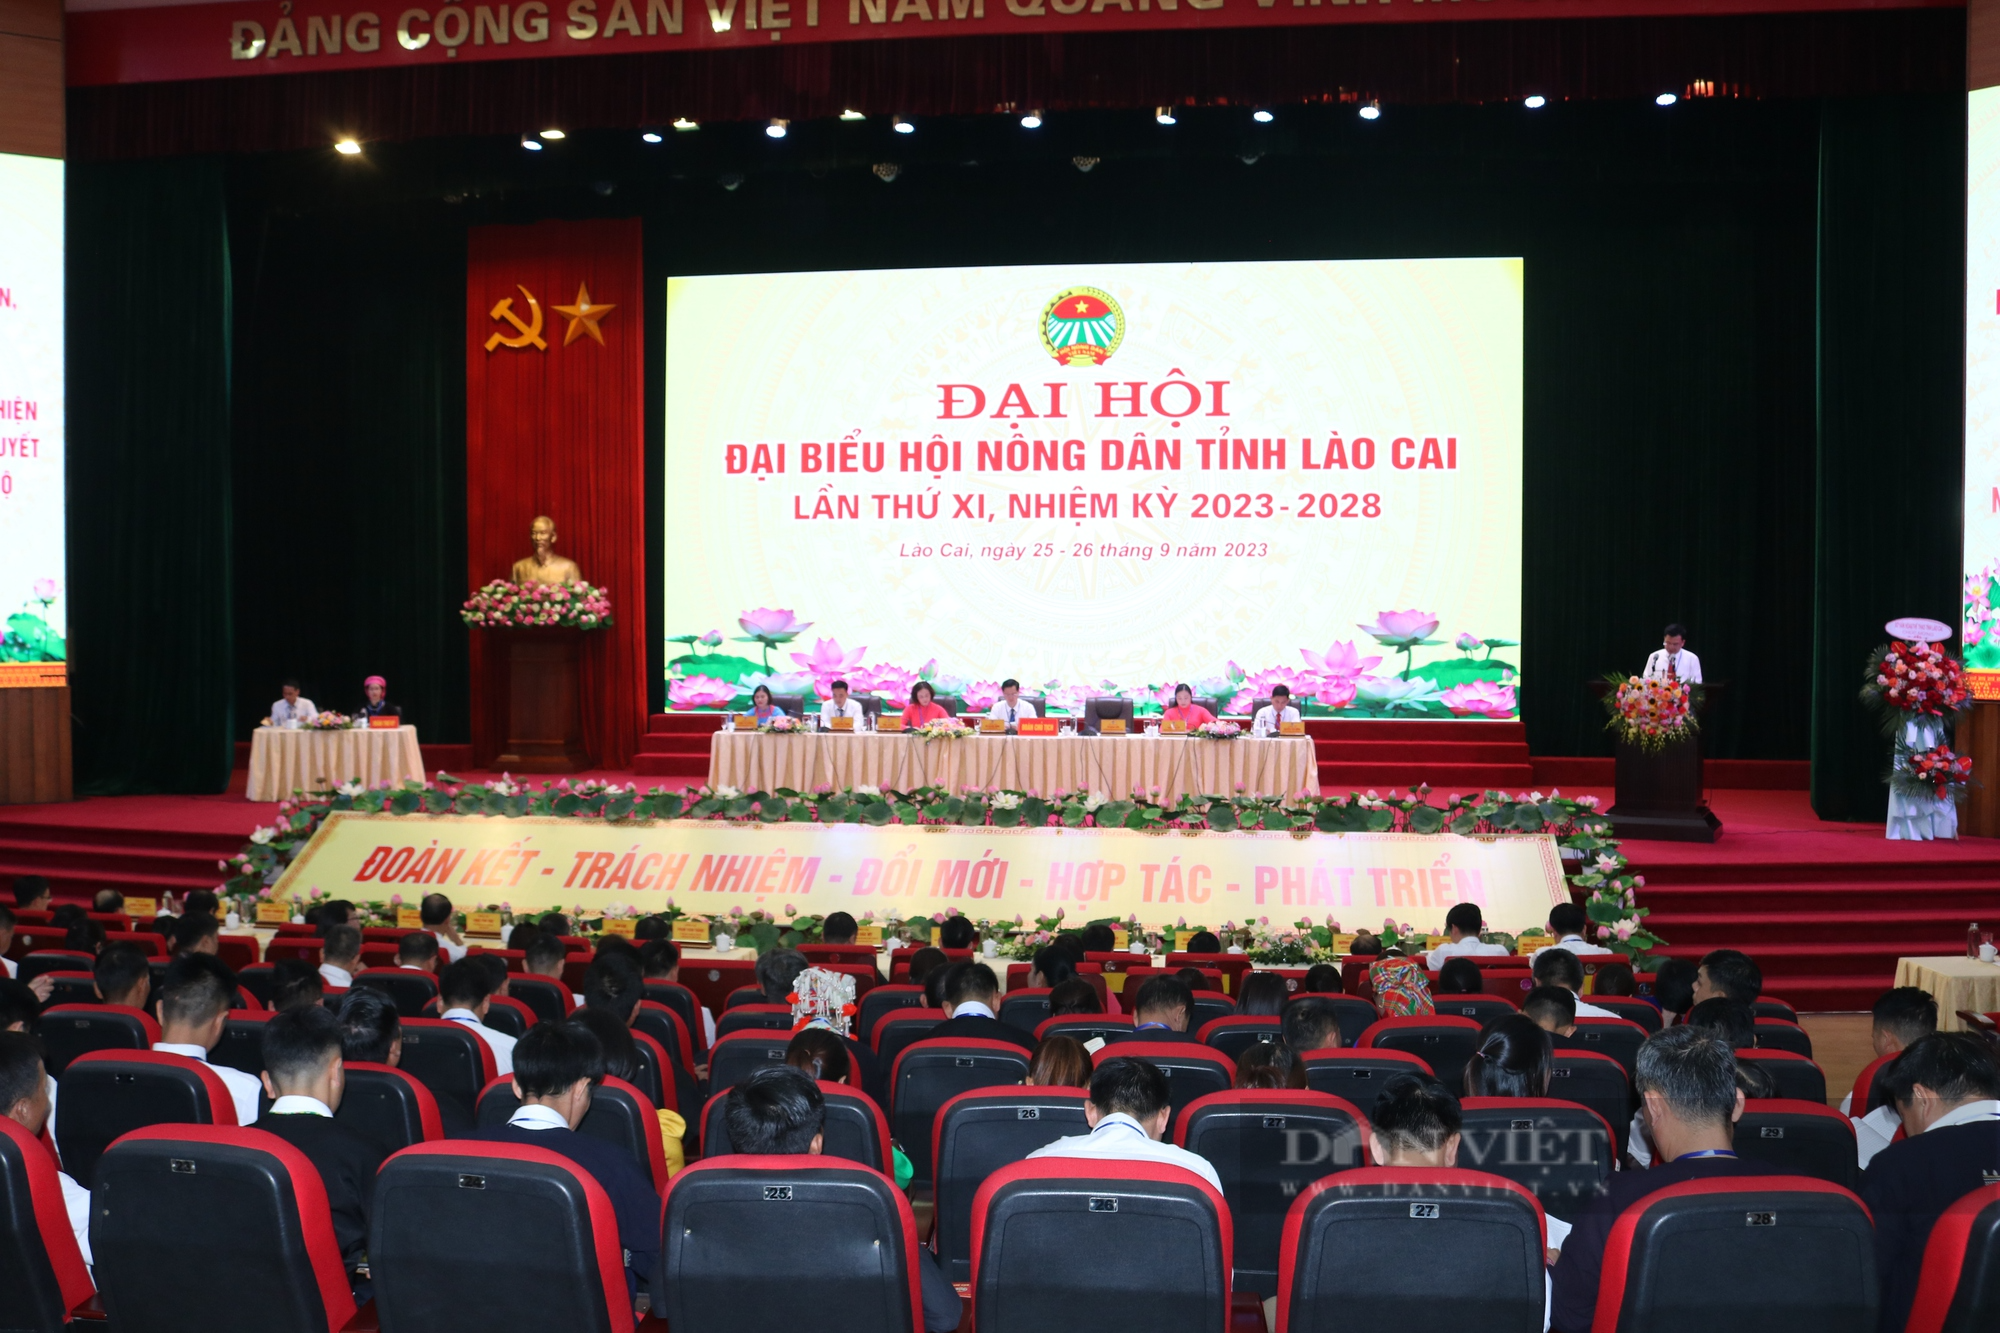 Gần 300 đại biểu chính thức dự Đại hội đại biểu Hội Nông dân tỉnh Lào Cai lần thứ XI, nhiệm kỳ 2023 - 2028 - Ảnh 2.